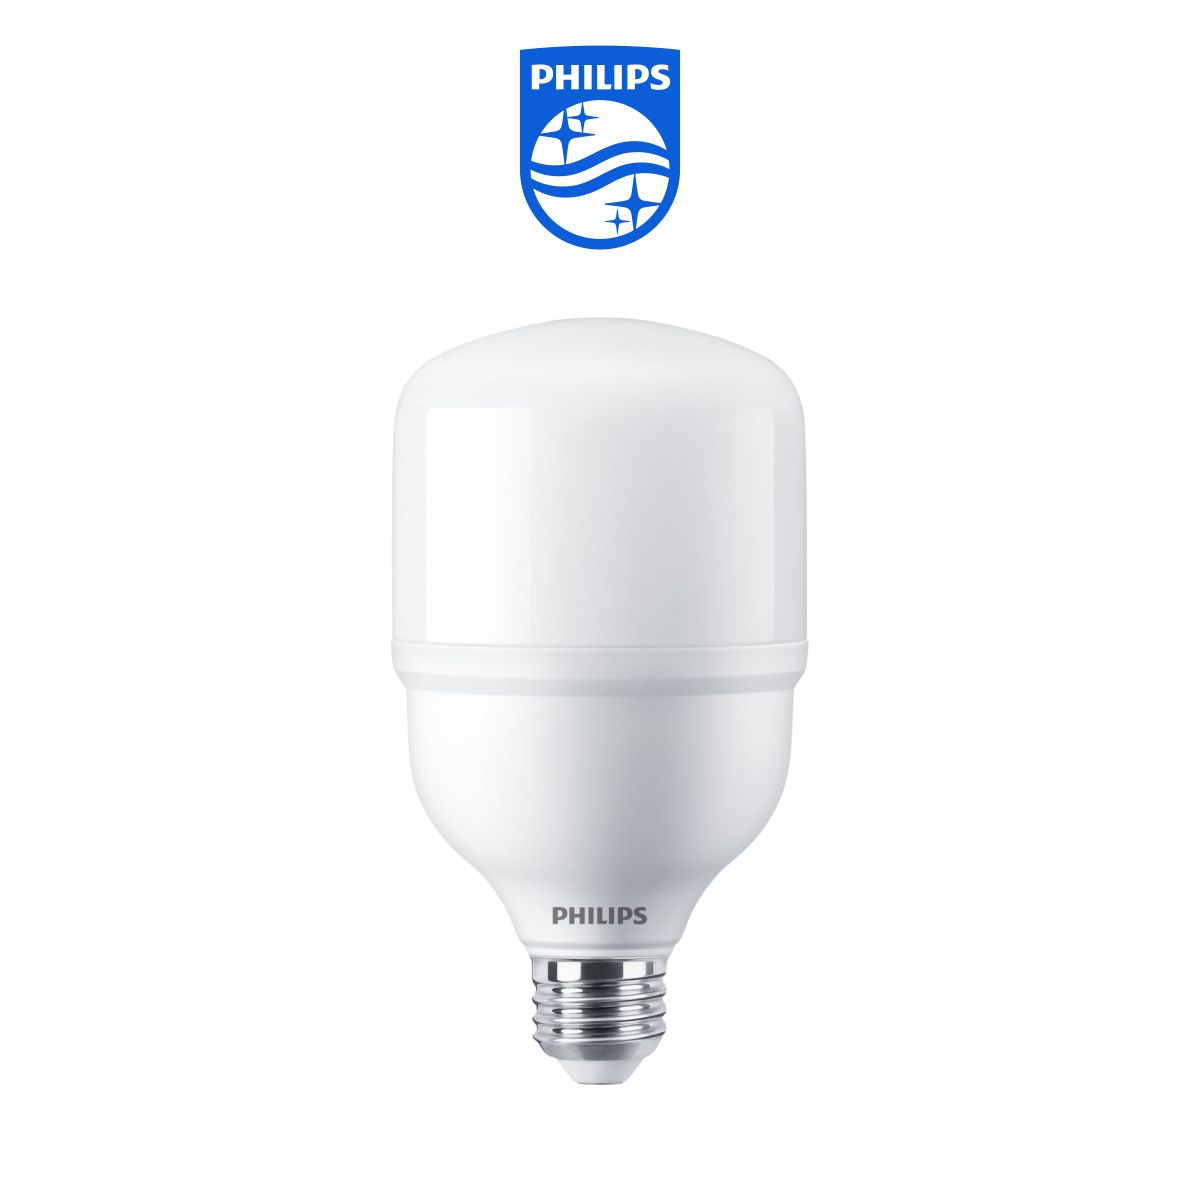 Bóng đèn Philips TrueForce Essential LED HB MV E27 - Ánh sáng Trắng, Hiệu suất chiếu sáng cao, Tiết kiệm điện, Chất lượng ánh sáng hoàn hảo - Hàng Chính Hãng